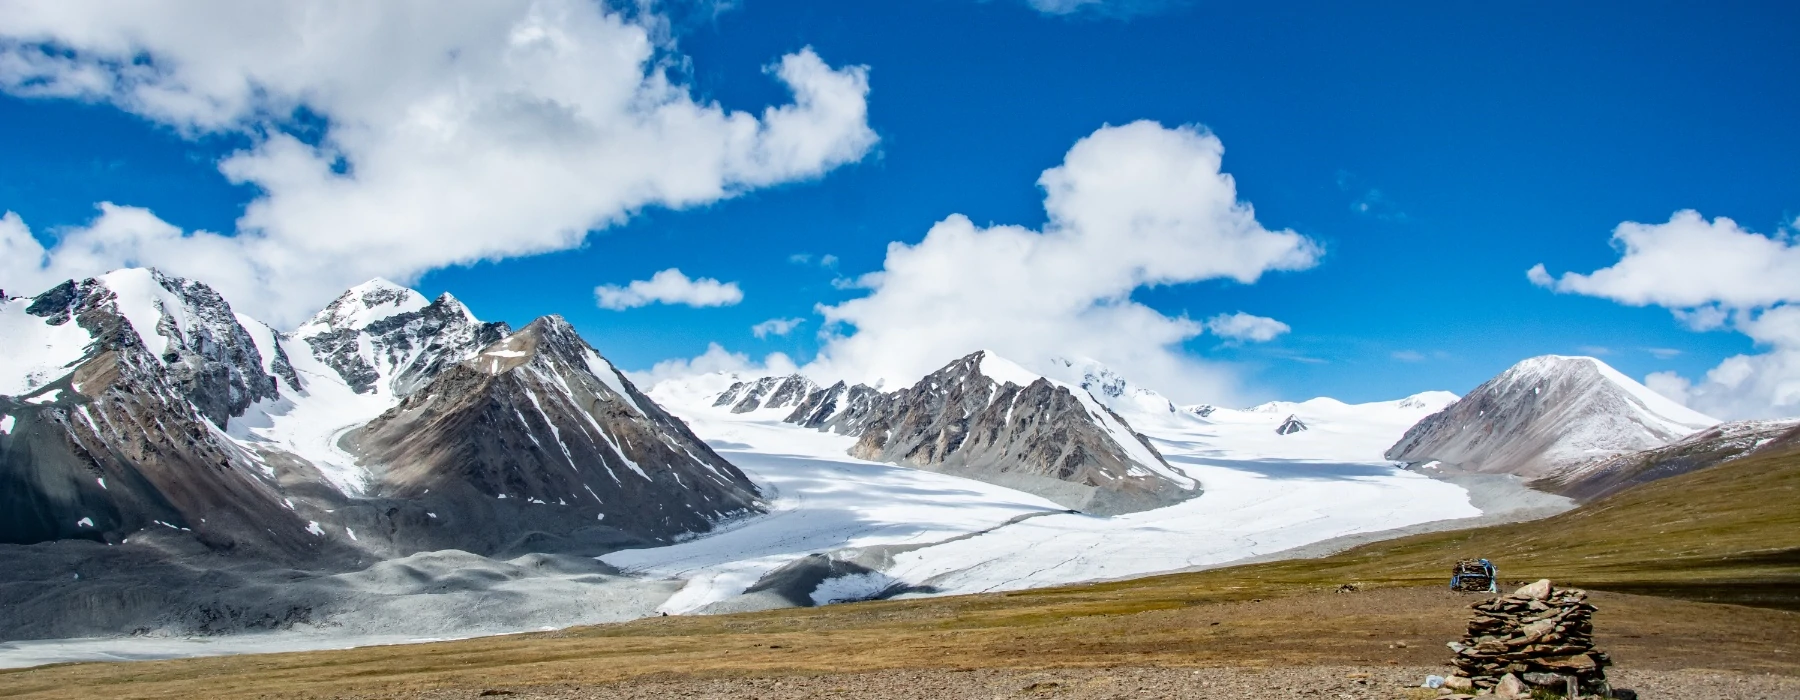 Mongolia's Altai Mountains Trek